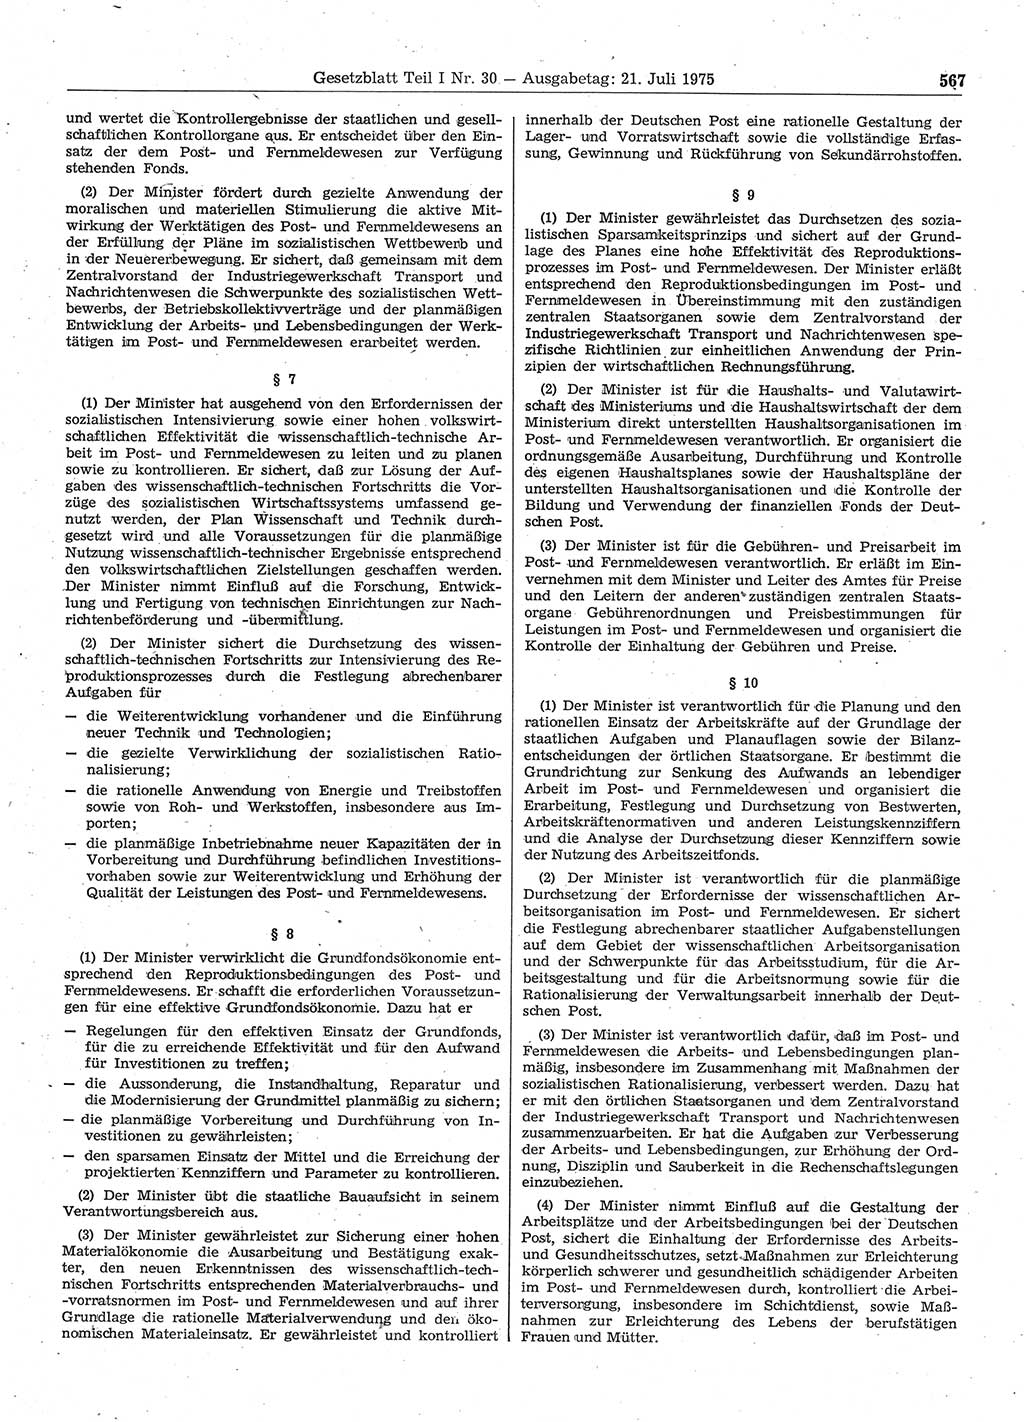 Gesetzblatt (GBl.) der Deutschen Demokratischen Republik (DDR) Teil Ⅰ 1975, Seite 567 (GBl. DDR Ⅰ 1975, S. 567)